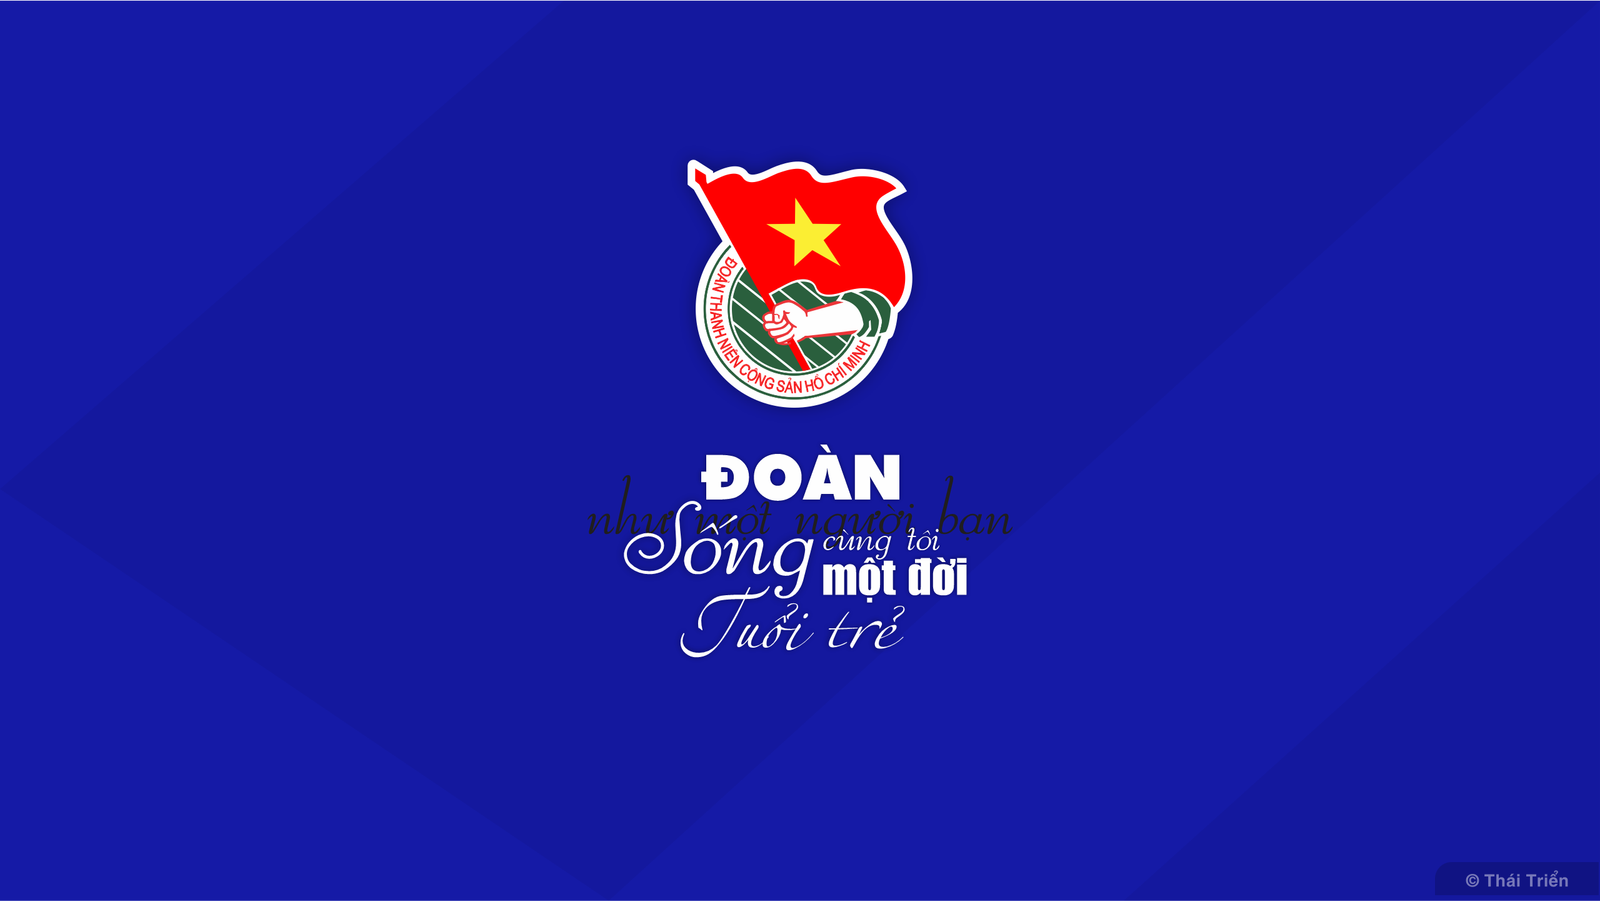 Đoàn thanh niên là tổ chức đoàn thể đại diện cho tinh thần trẻ trung, năng động và sáng tạo của thanh niên Việt Nam. Họ tự tin khẳng định bản thân và đóng góp tích cực trong xây dựng đất nước. Hãy cùng xem hình ảnh của Đoàn thanh niên để cảm nhận sức sống dồi dào của tâm hồn trẻ trung.